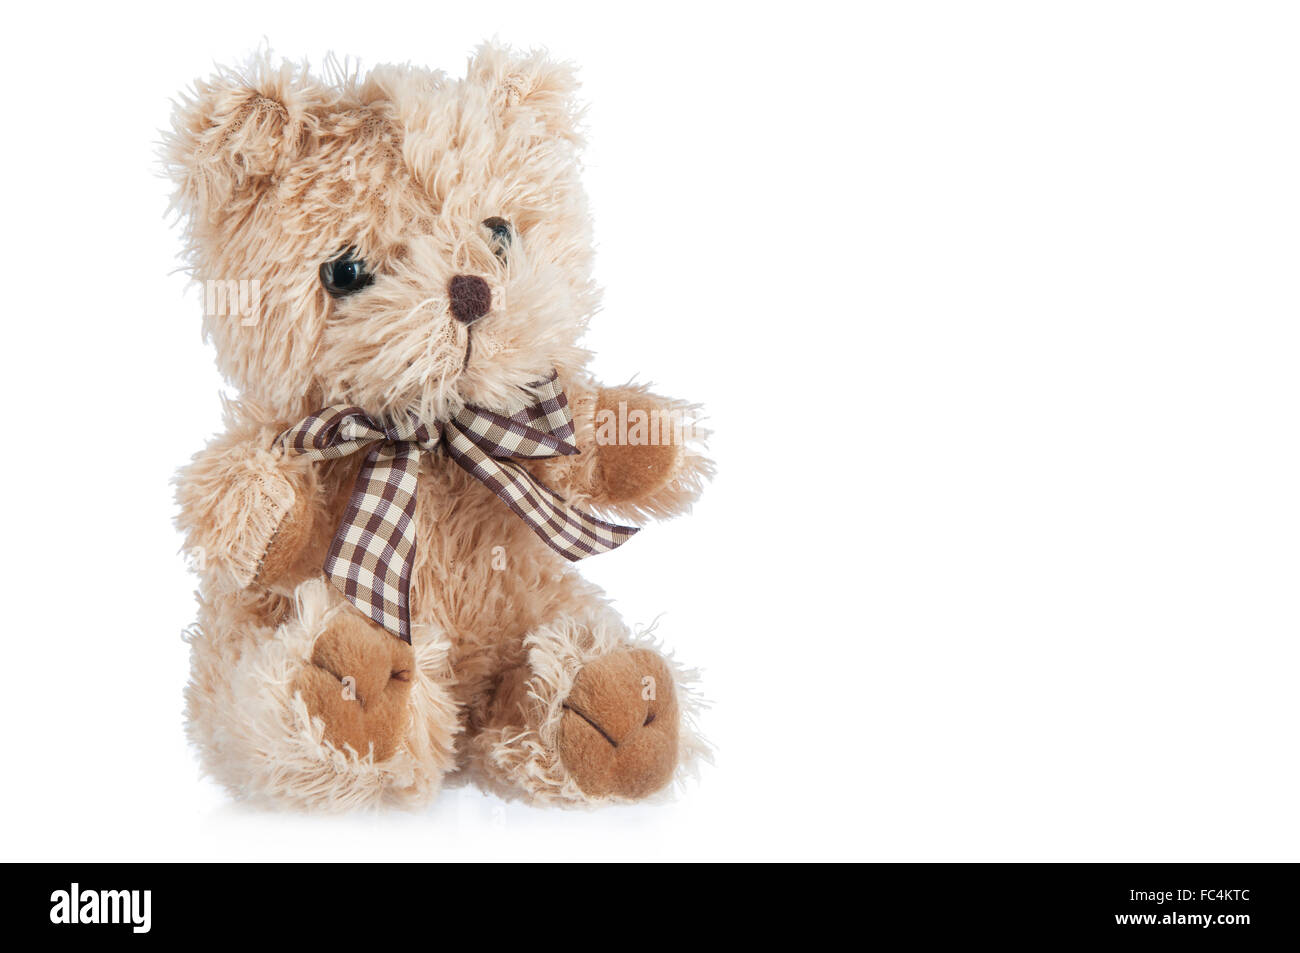 Teddy-bear toy isolé sur un fond blanc. Banque D'Images